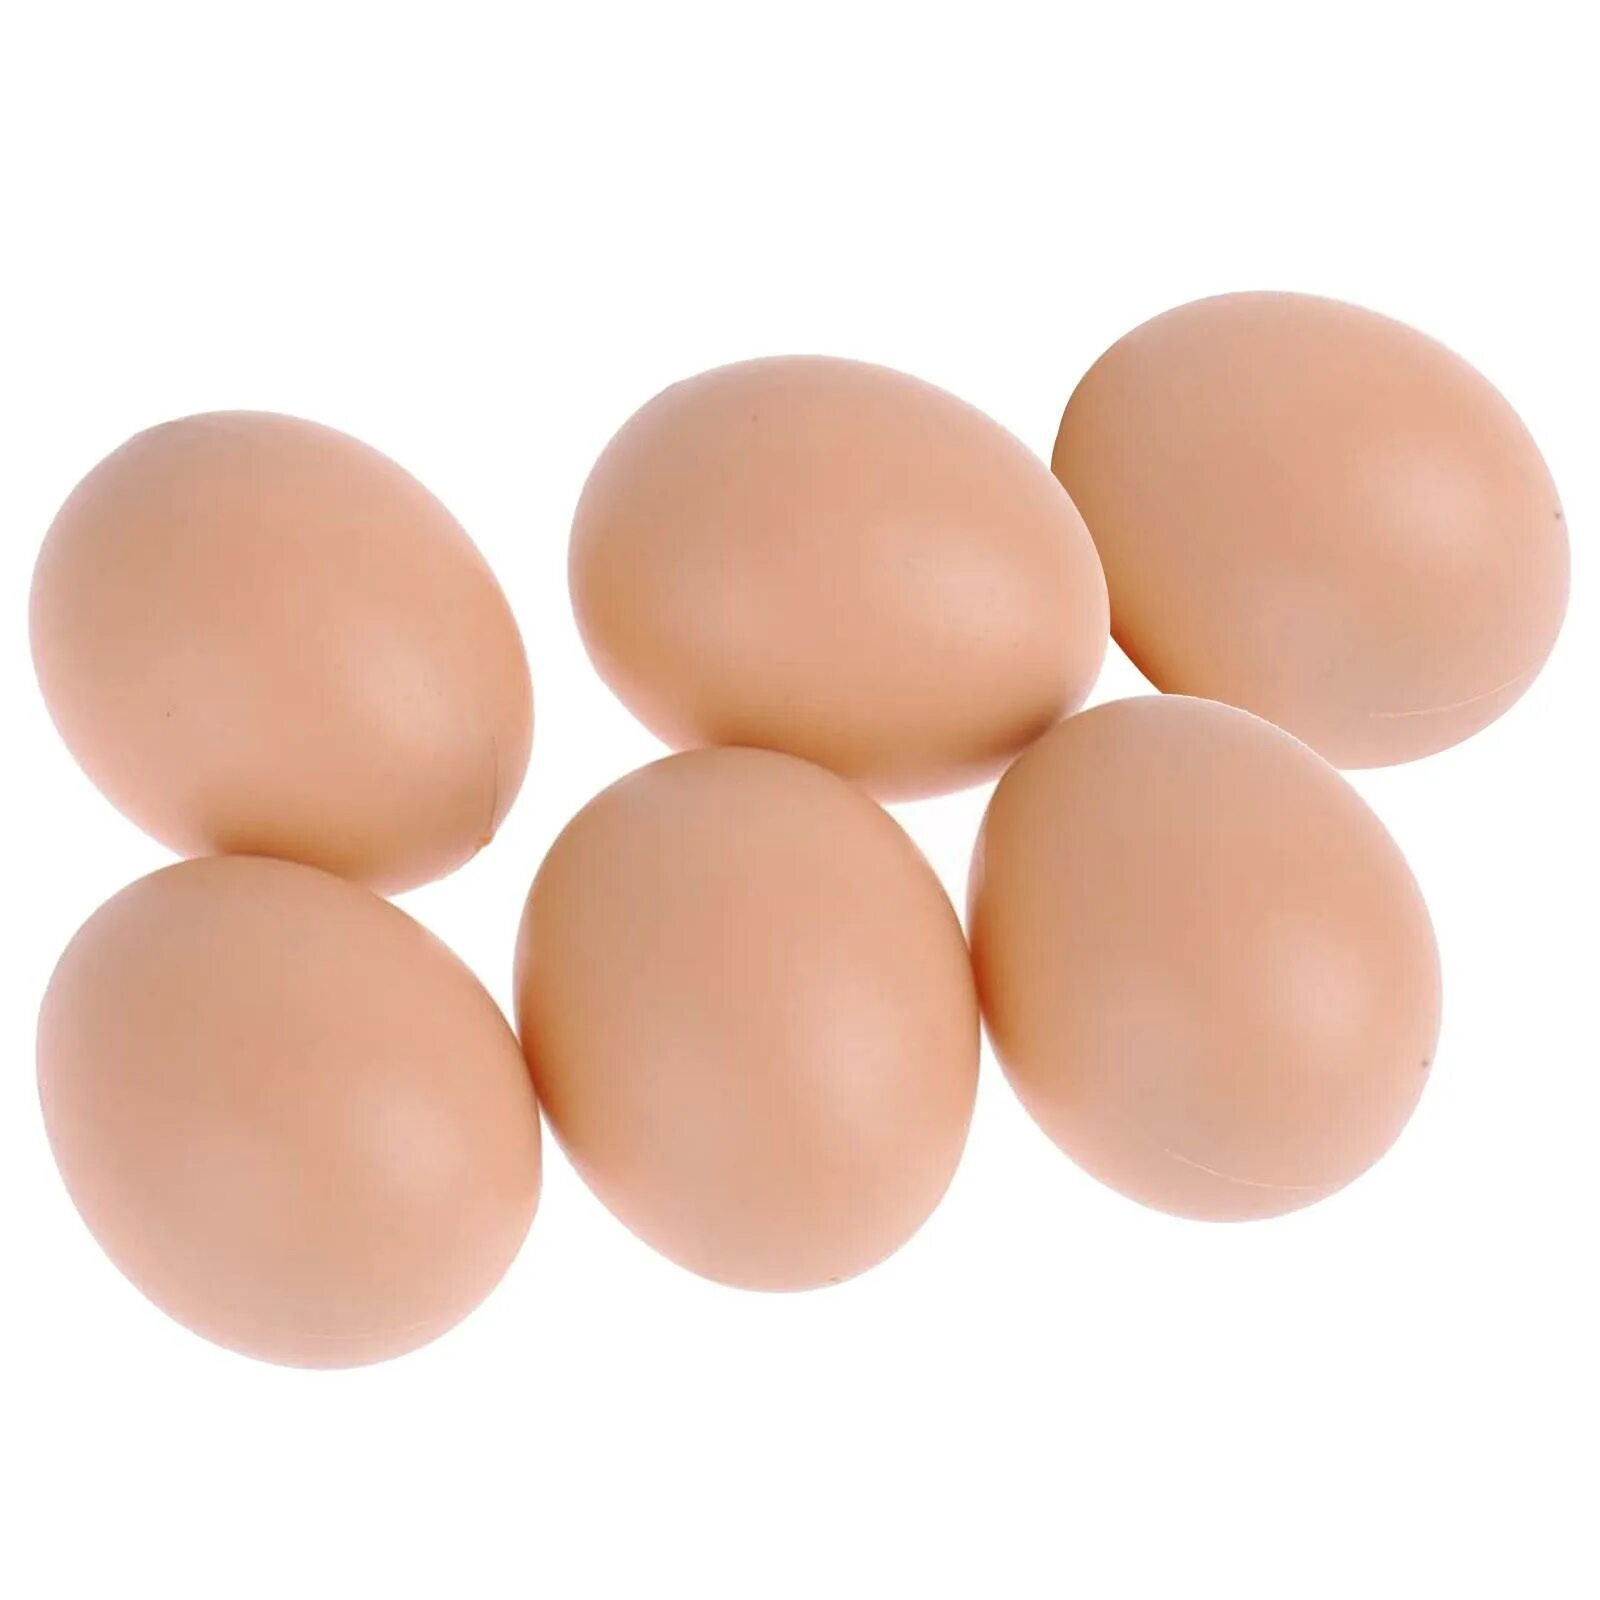 Яйцо. Яйцо куриное. Яйца 5 штук. Искусственные куриные яйца.